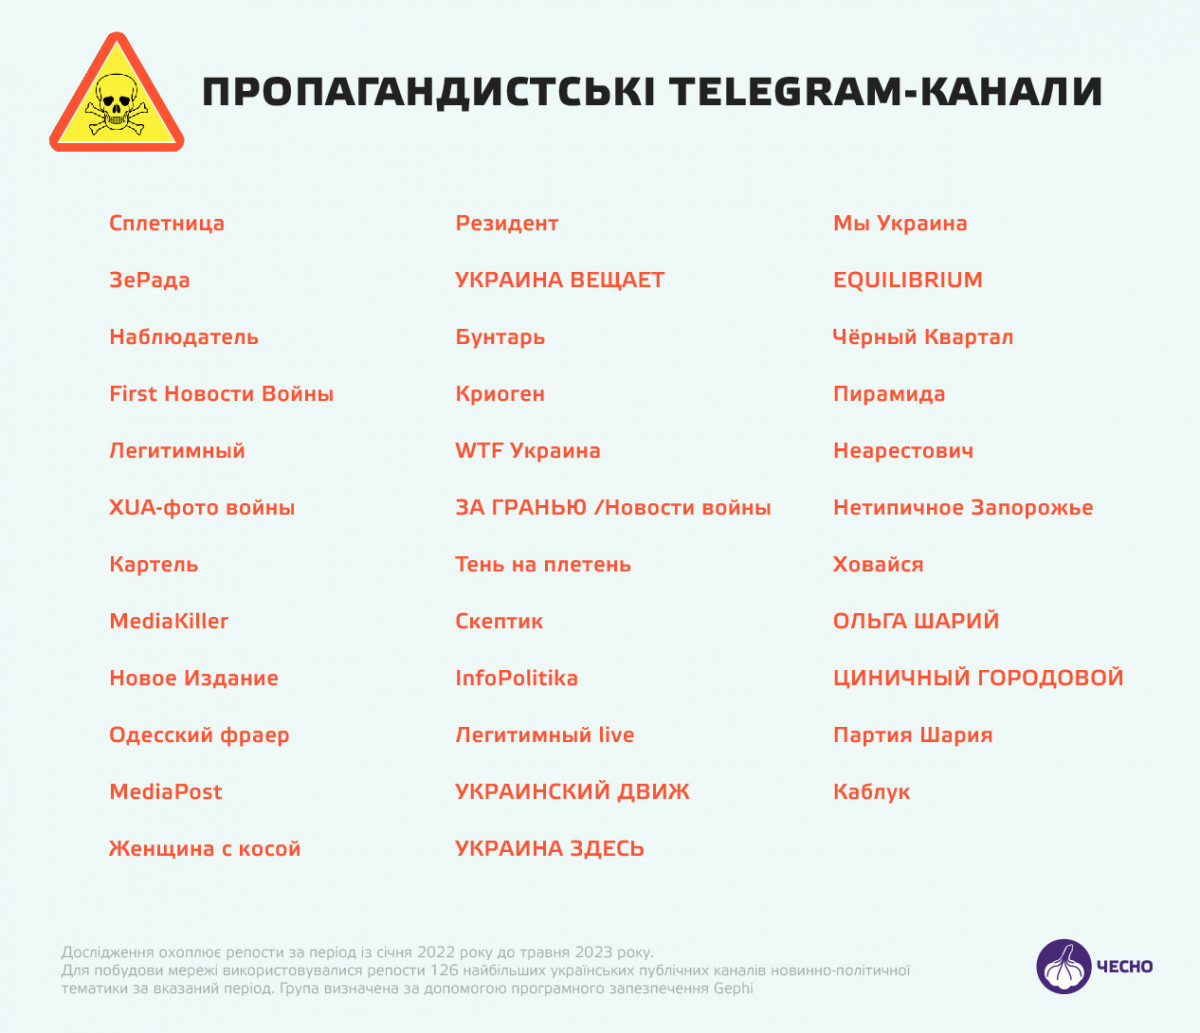 Как перевести телеграмма на русский язык видео фото 49